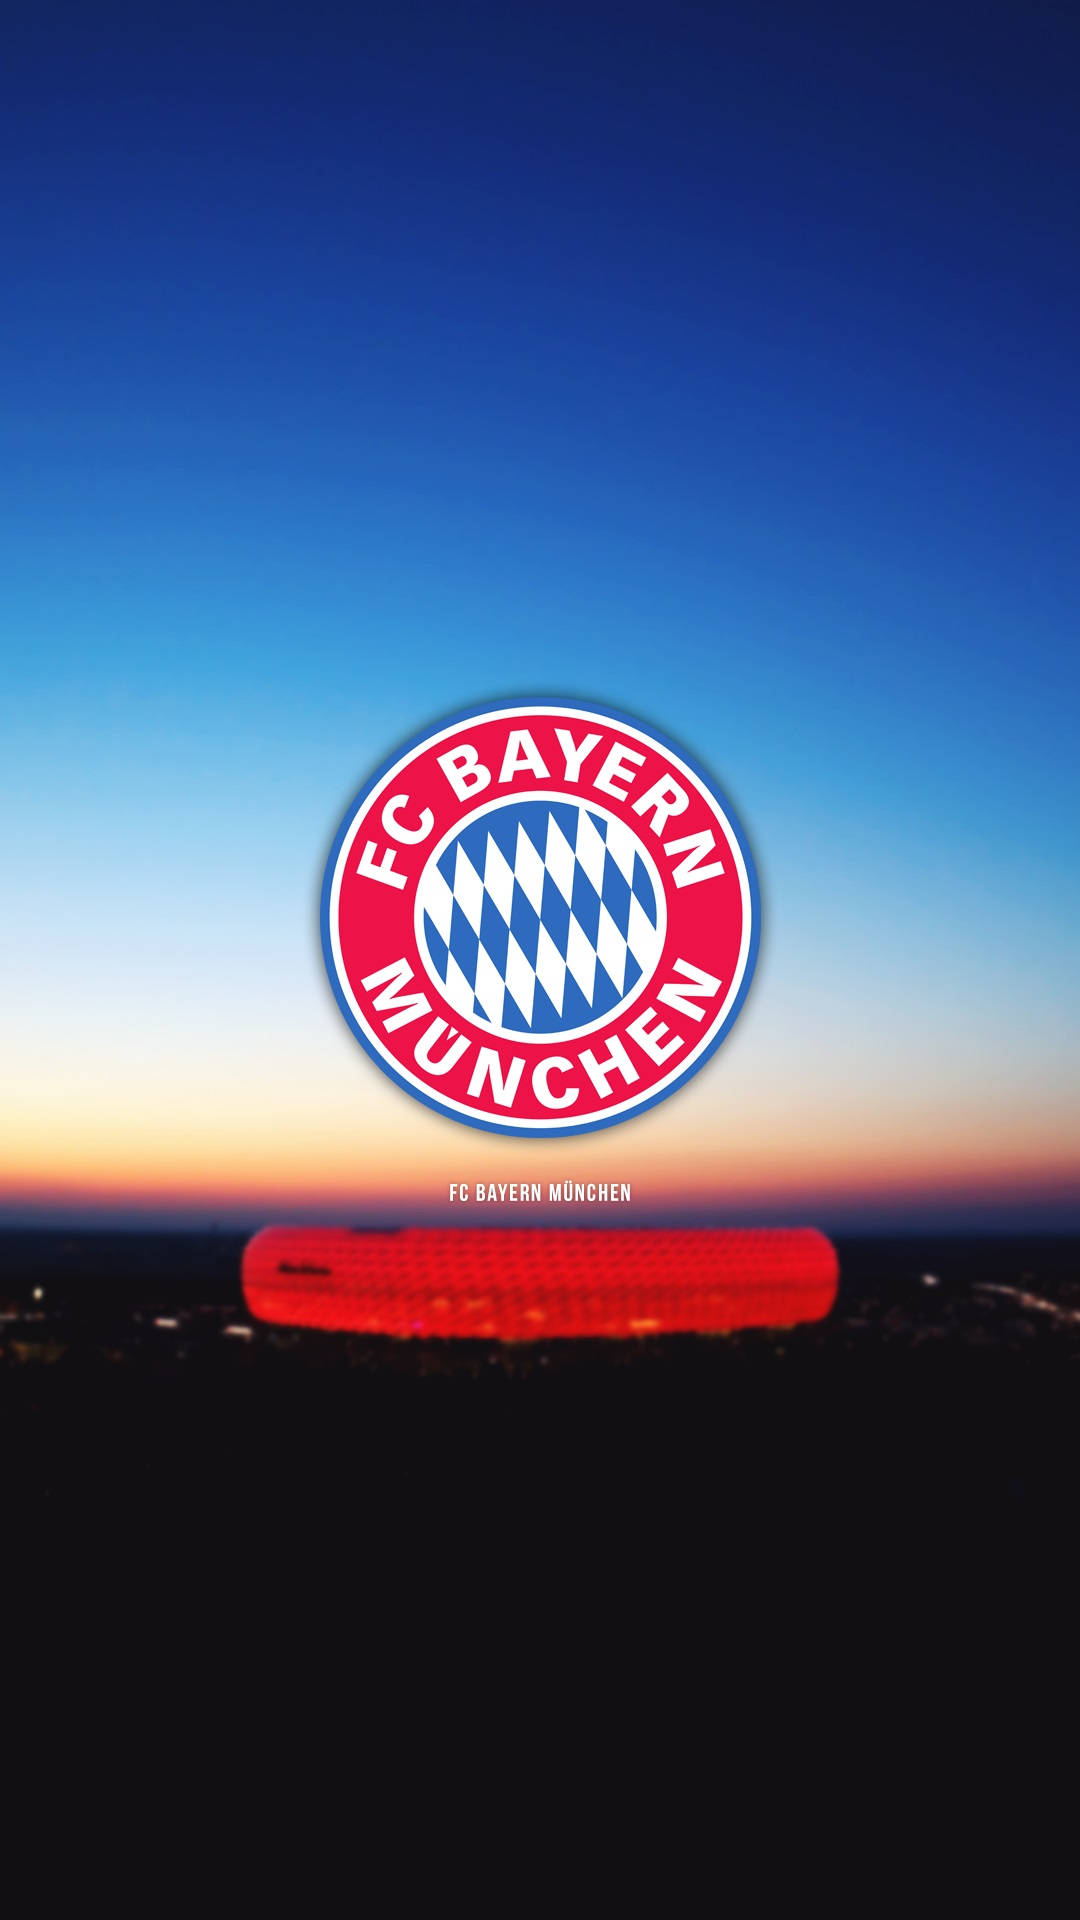 Bayern Munich Logo With Allianz Background